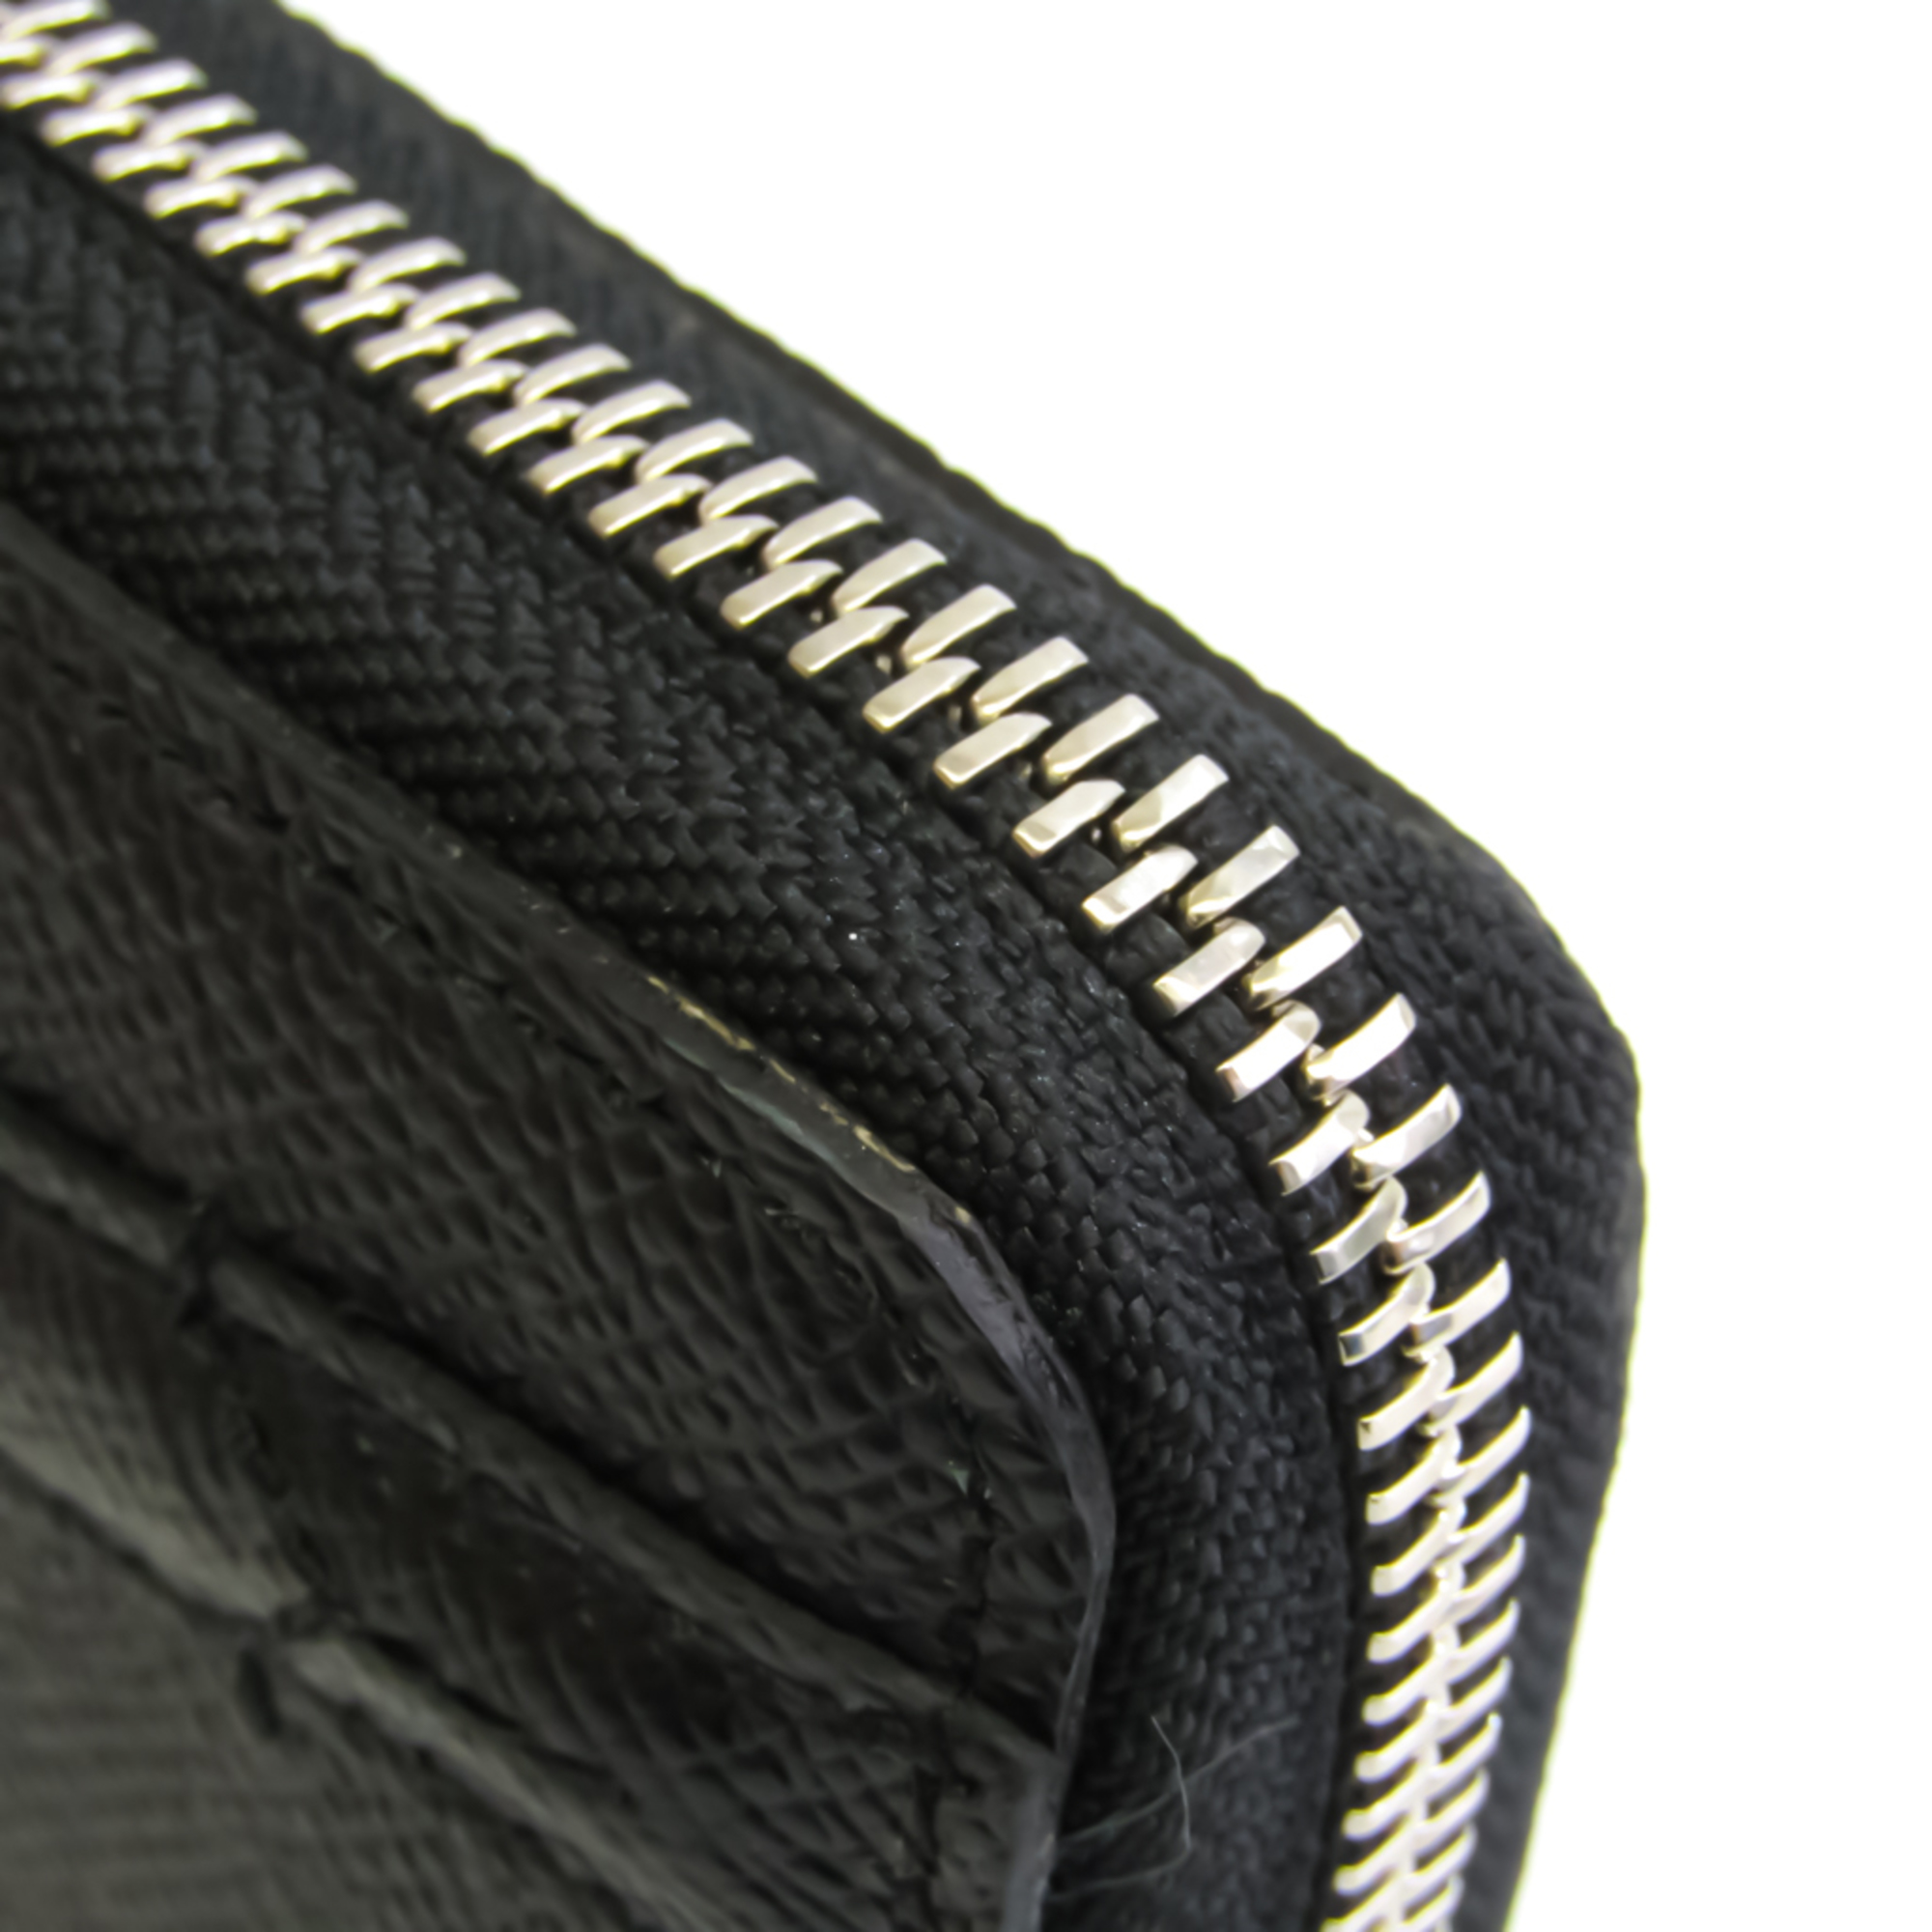 Pelle Morbida Deck/9 Men's Leather Long Bill Wallet (bi-fold) Black